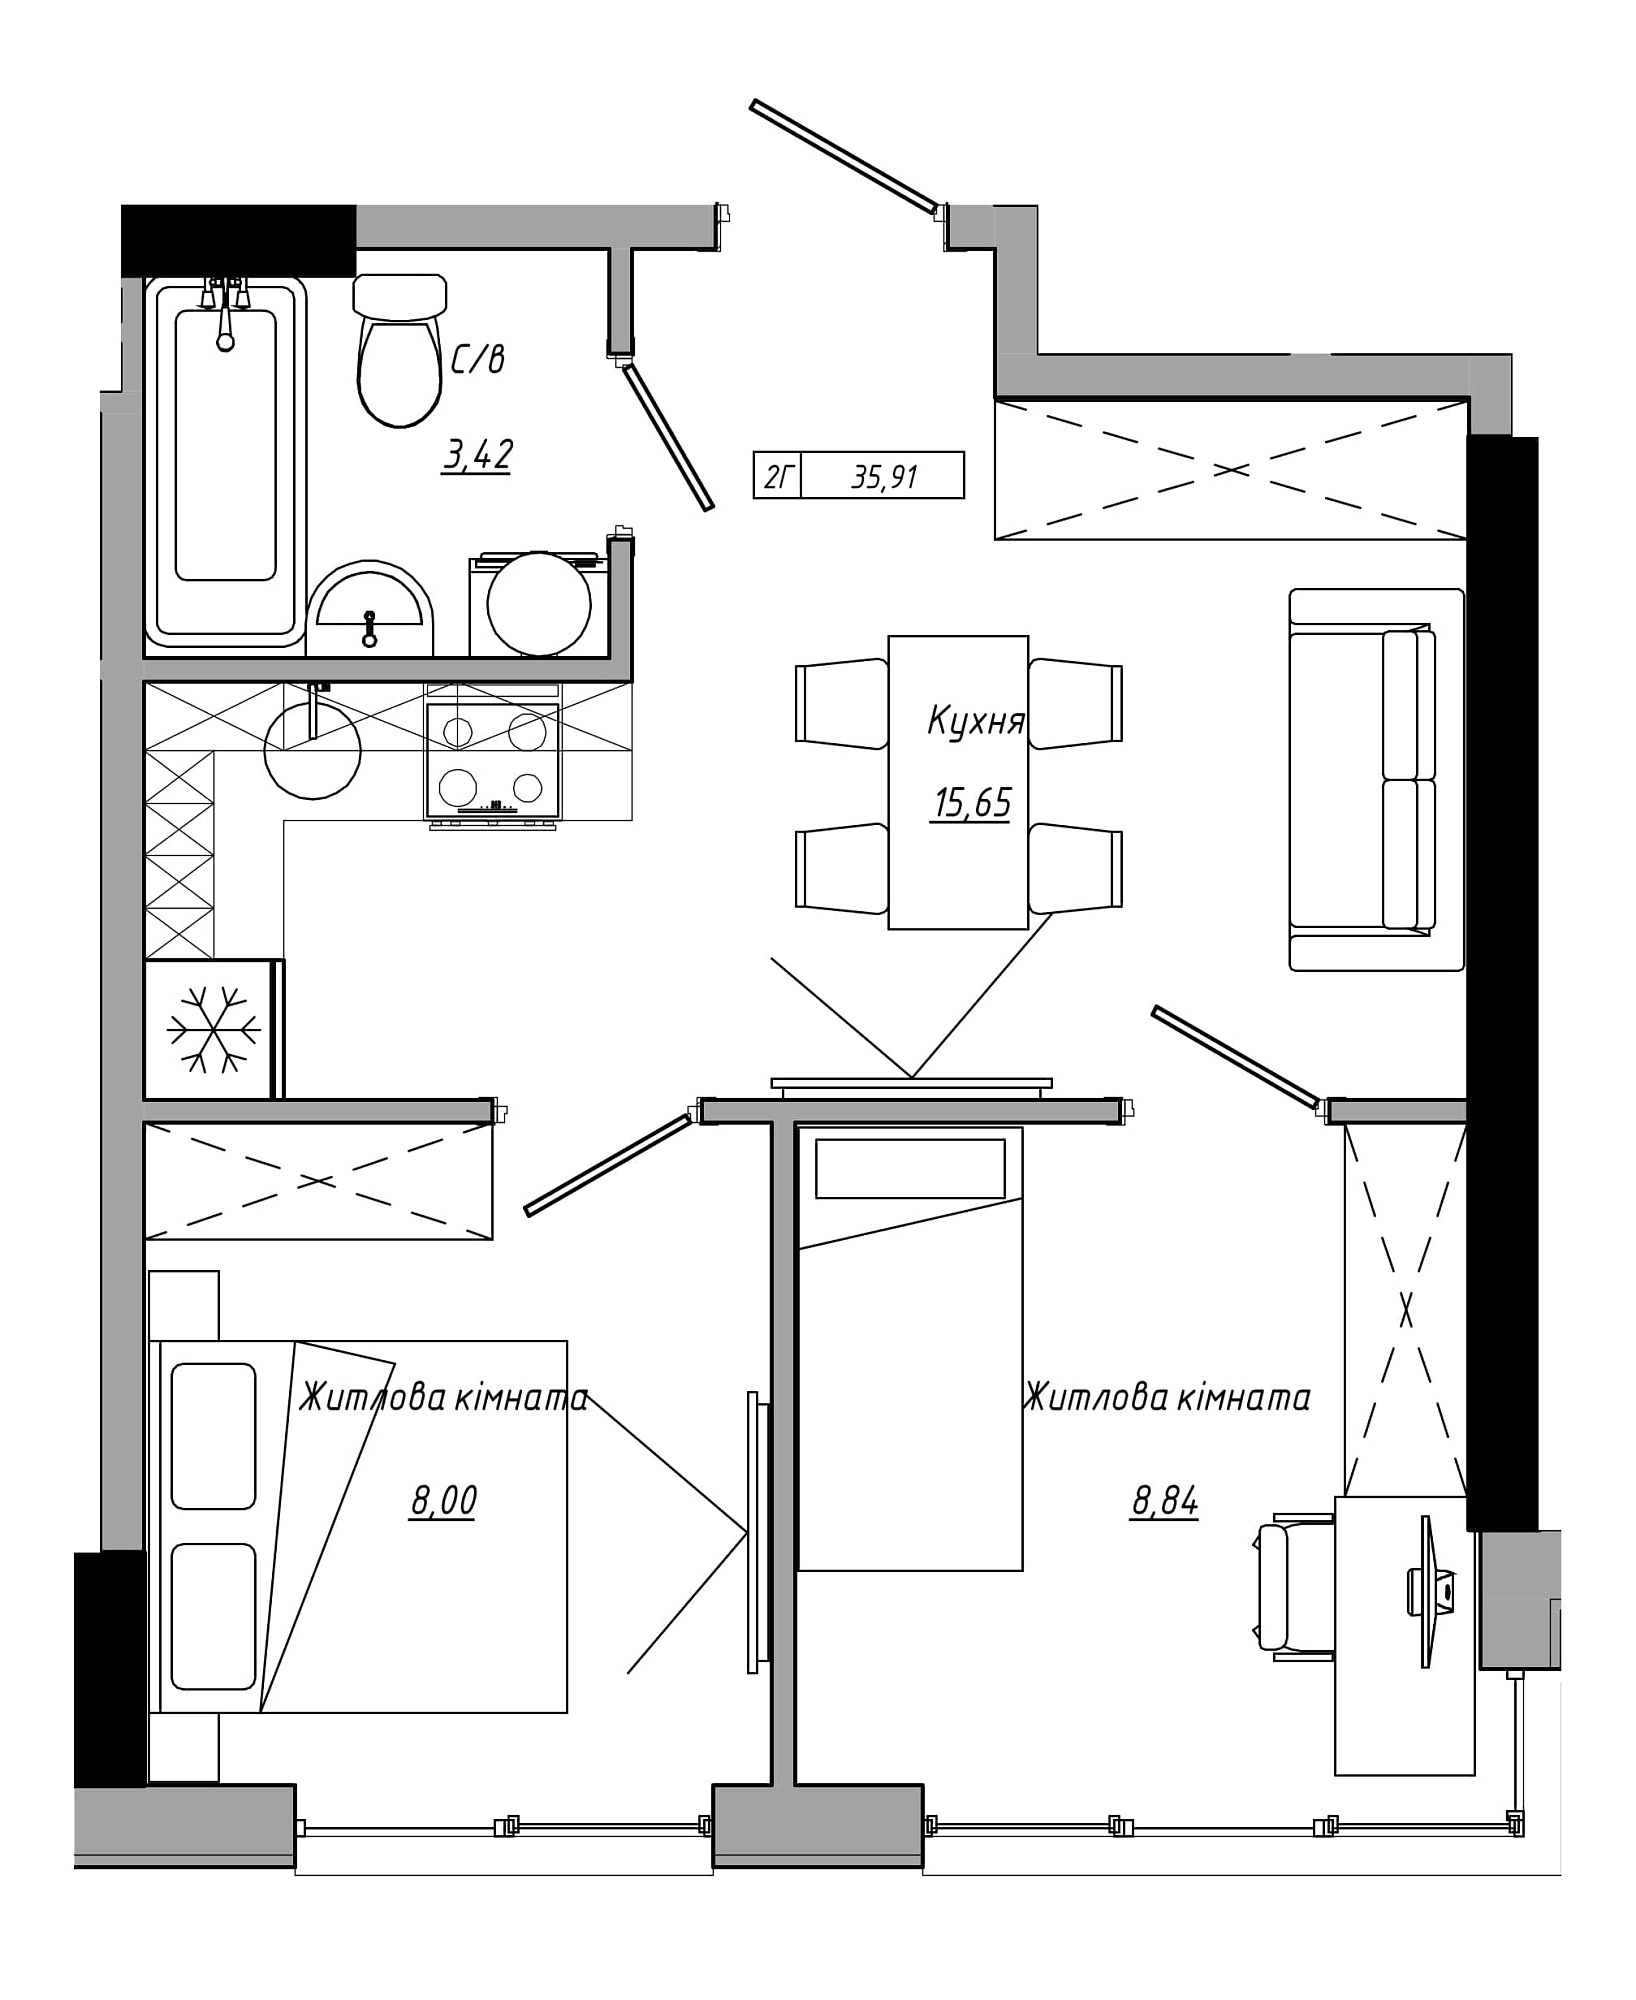 Планування 2-к квартира площею 35.91м2, AB-21-06/00019.